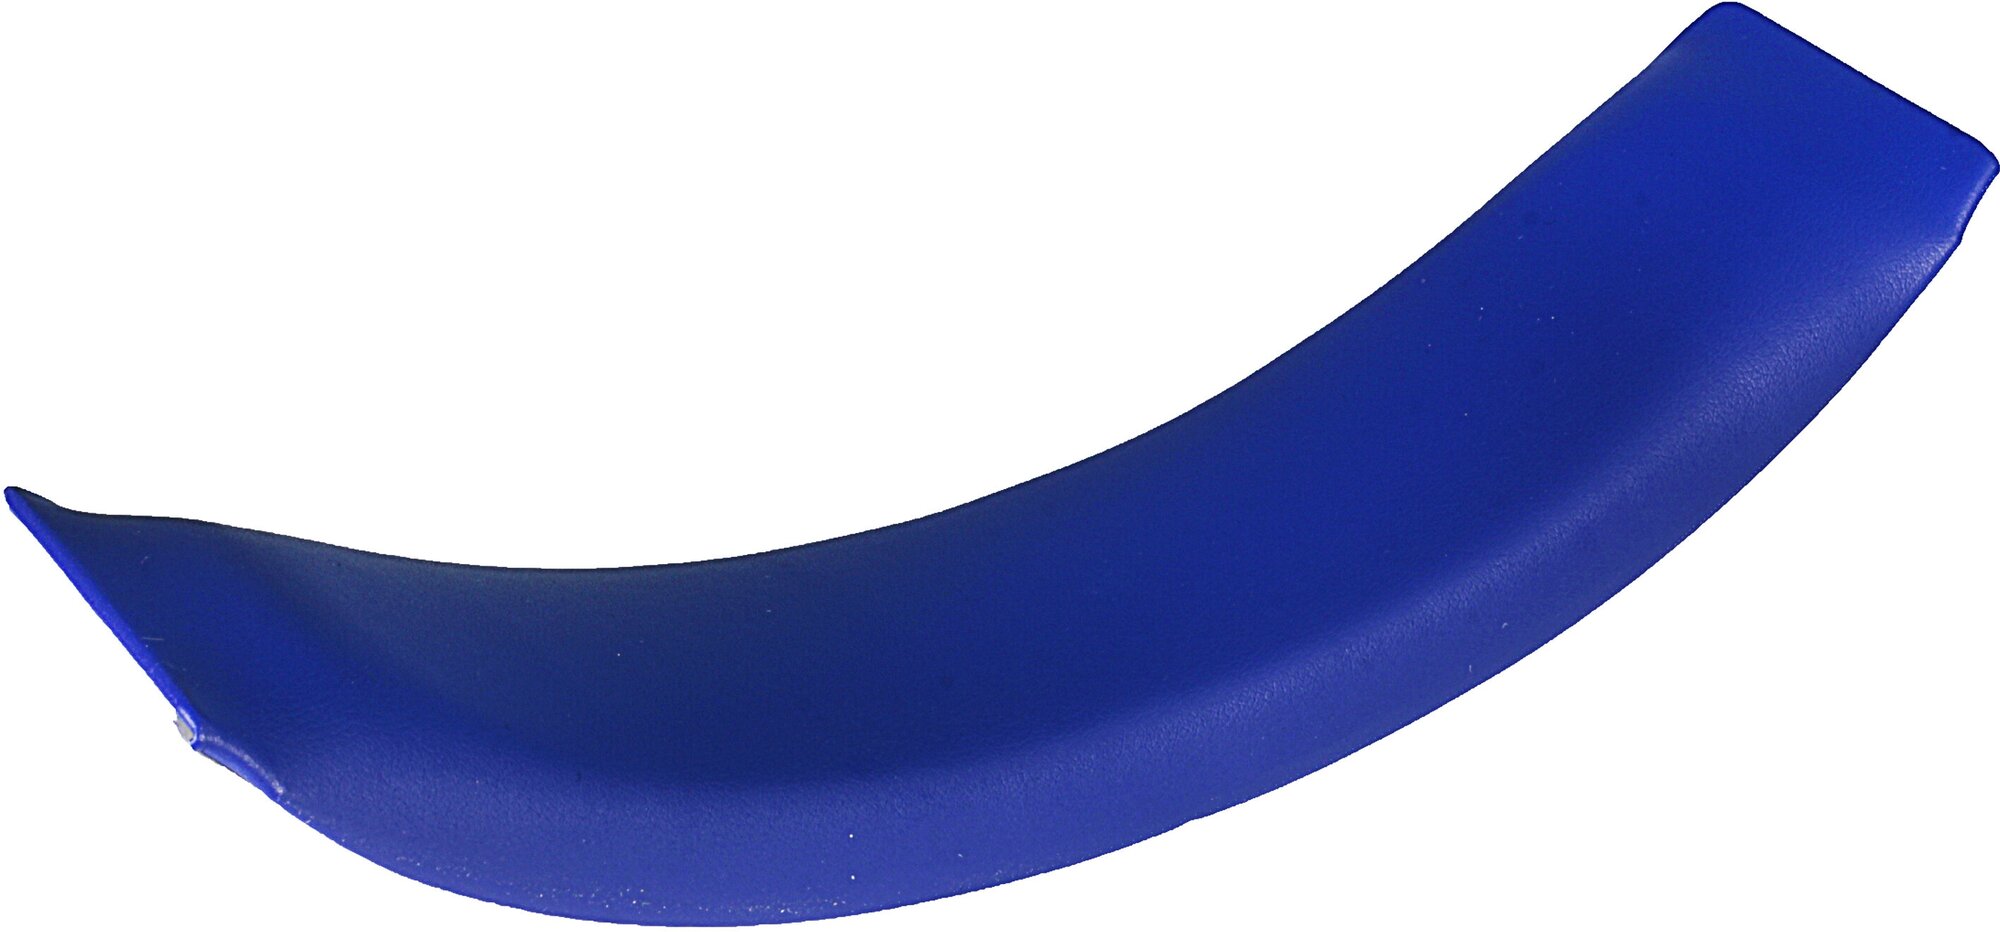 Накладка на оголовье для наушников Sony PS3 / PS4 / PS Vita (CECHYA-0083) синяя